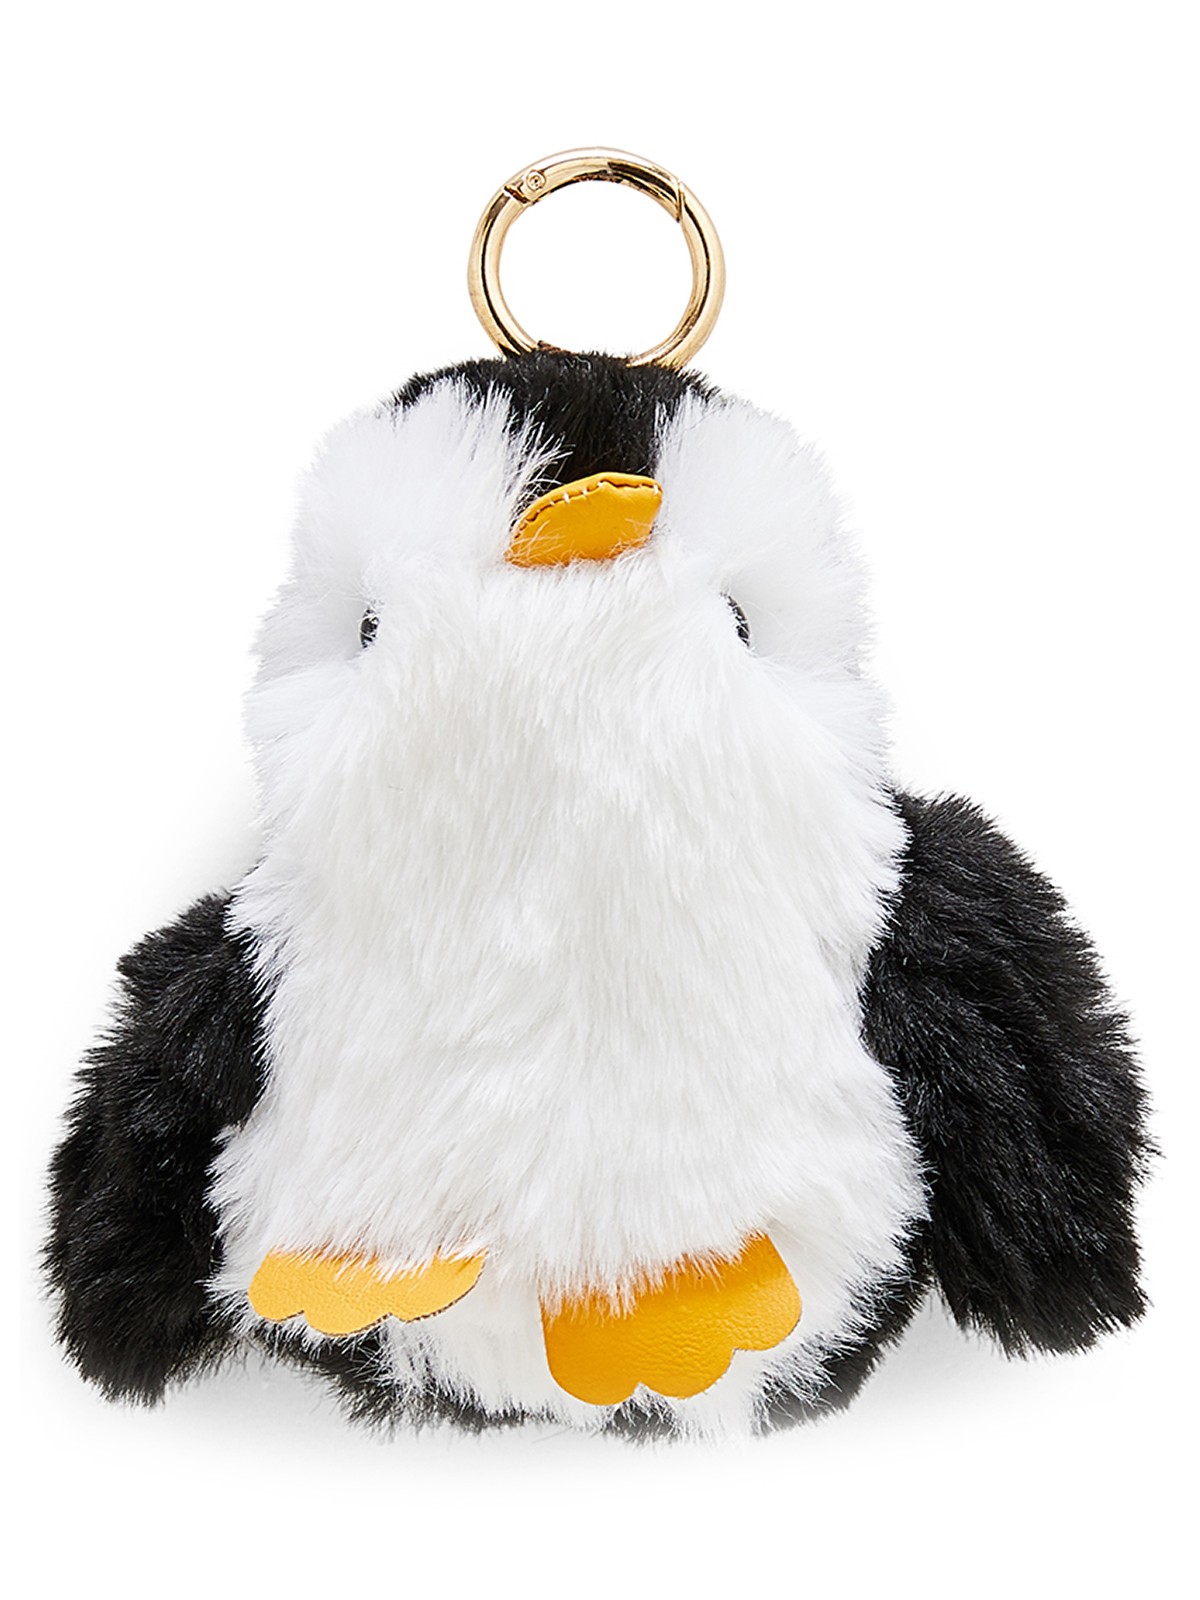 Porte-clés peluche pingouin